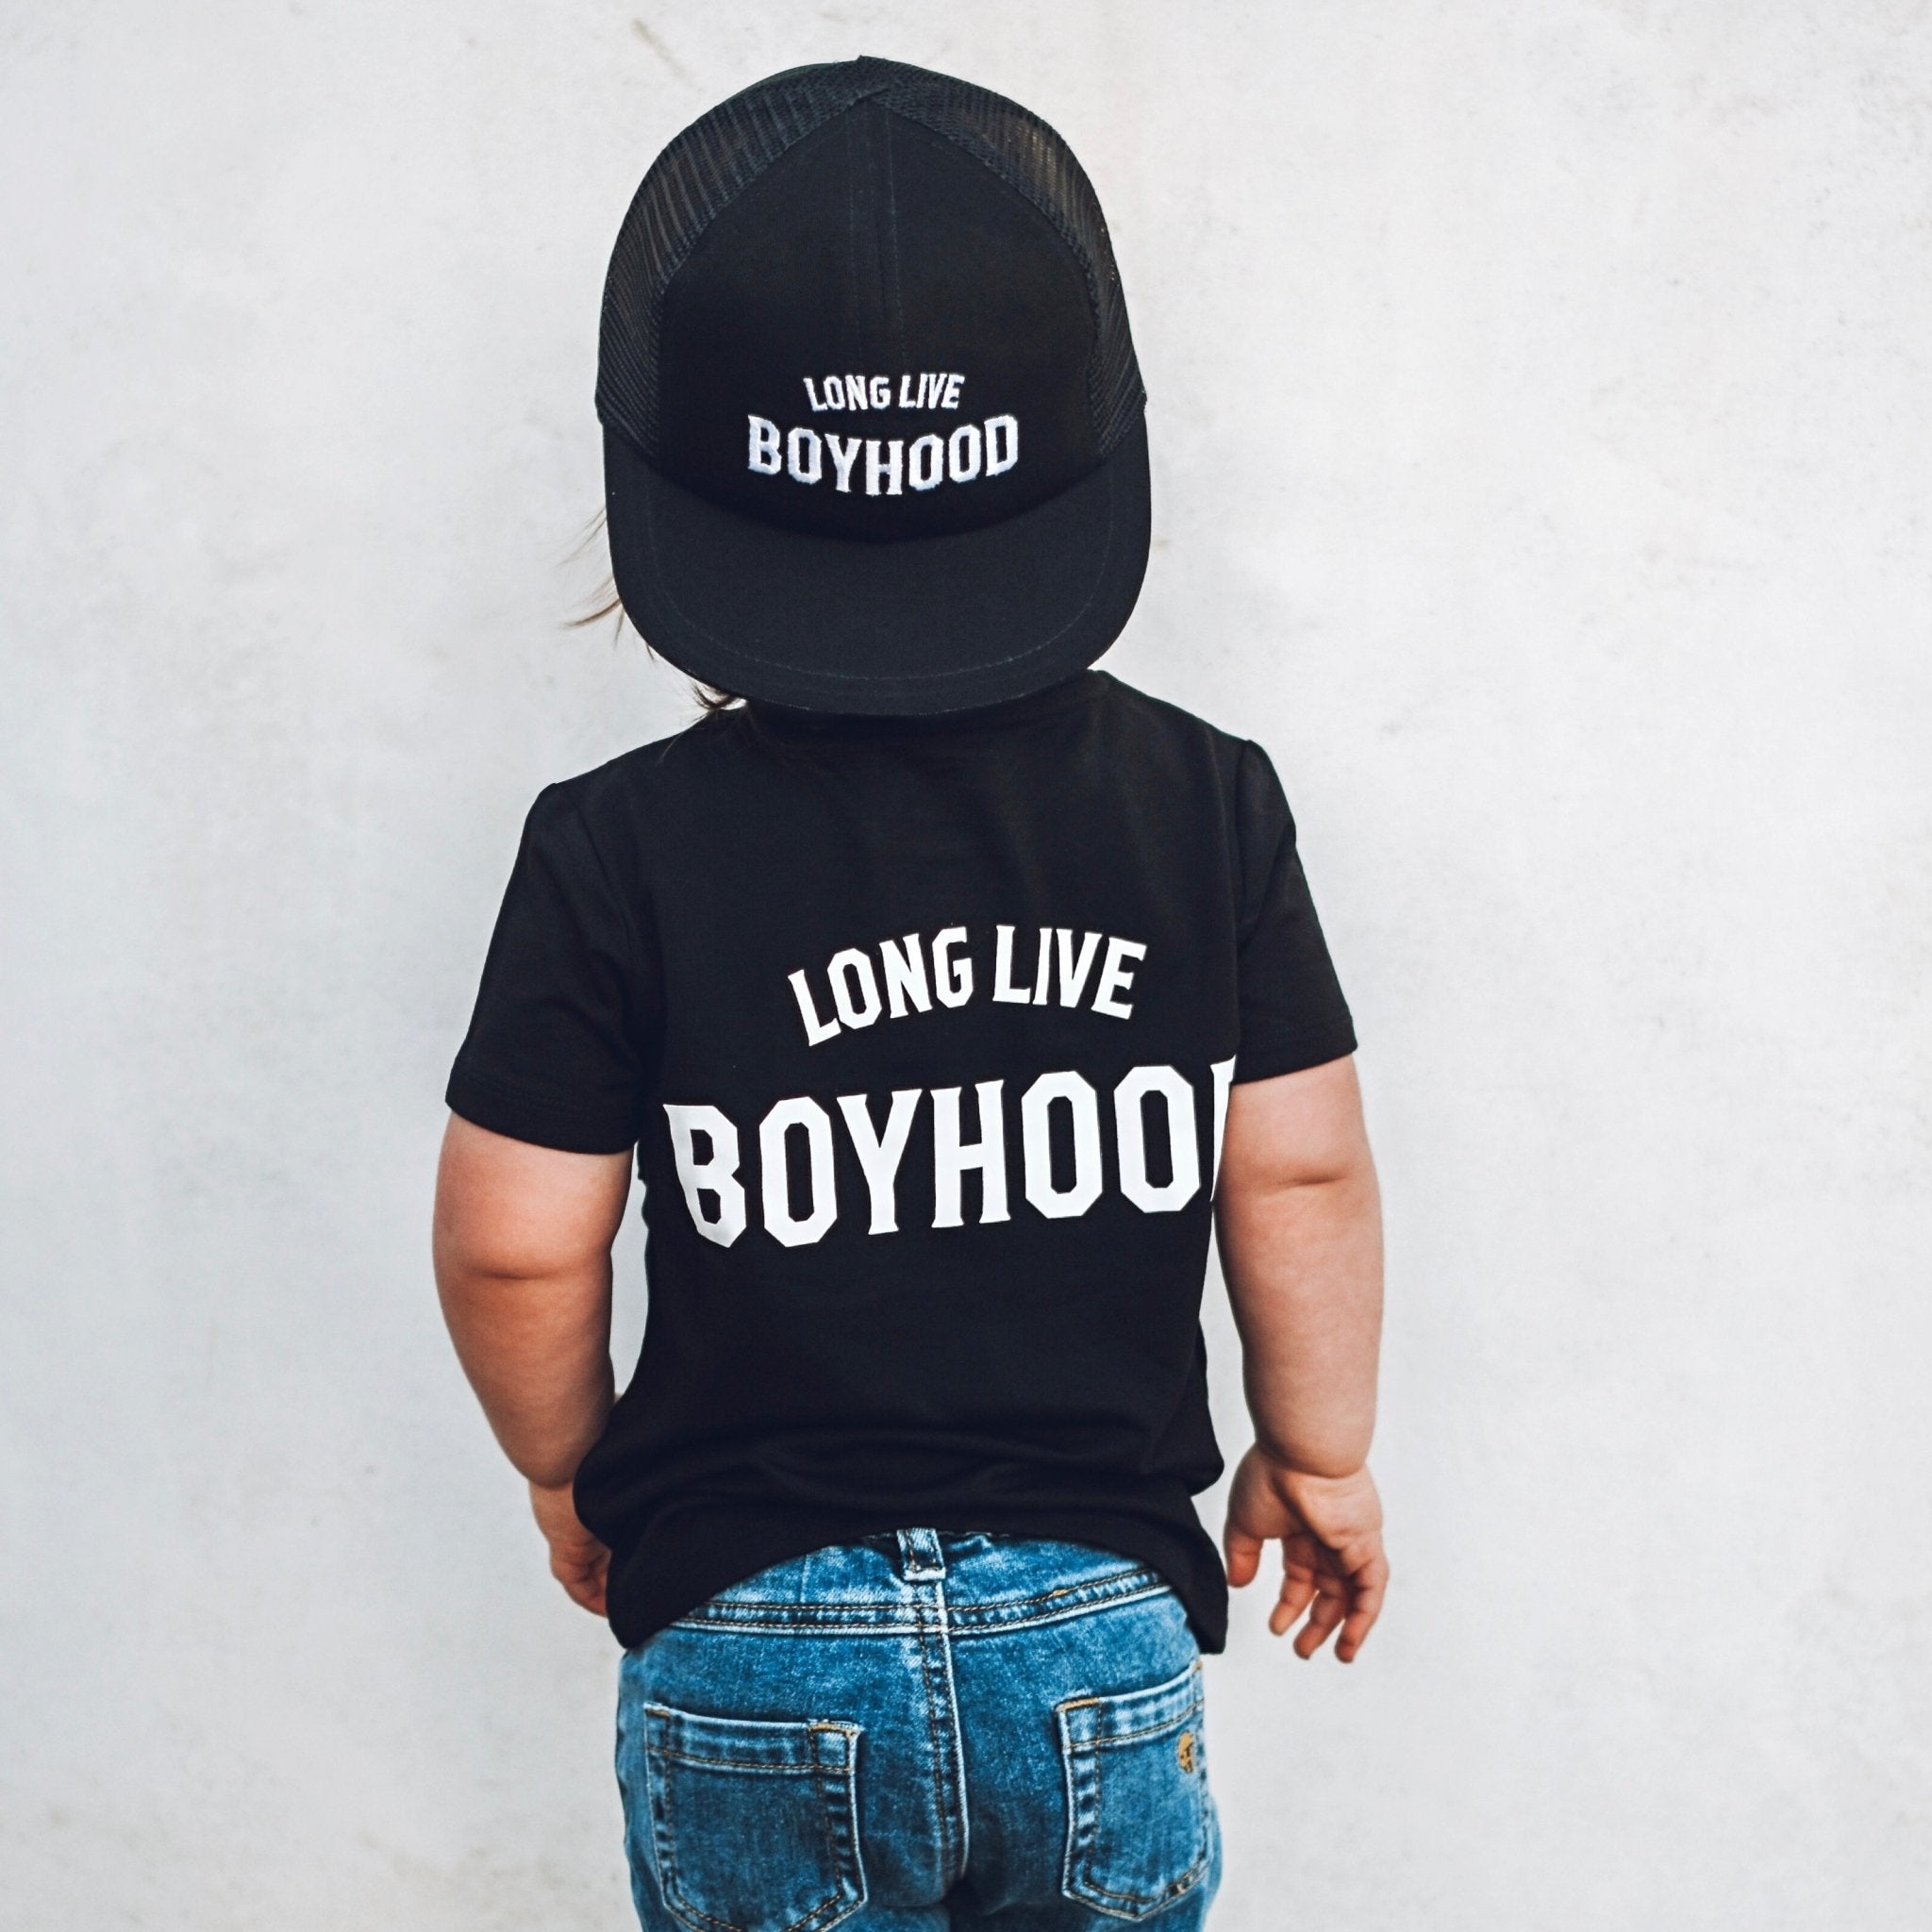 Boyhood Bamboo Short Sleeve Tee - George Hats